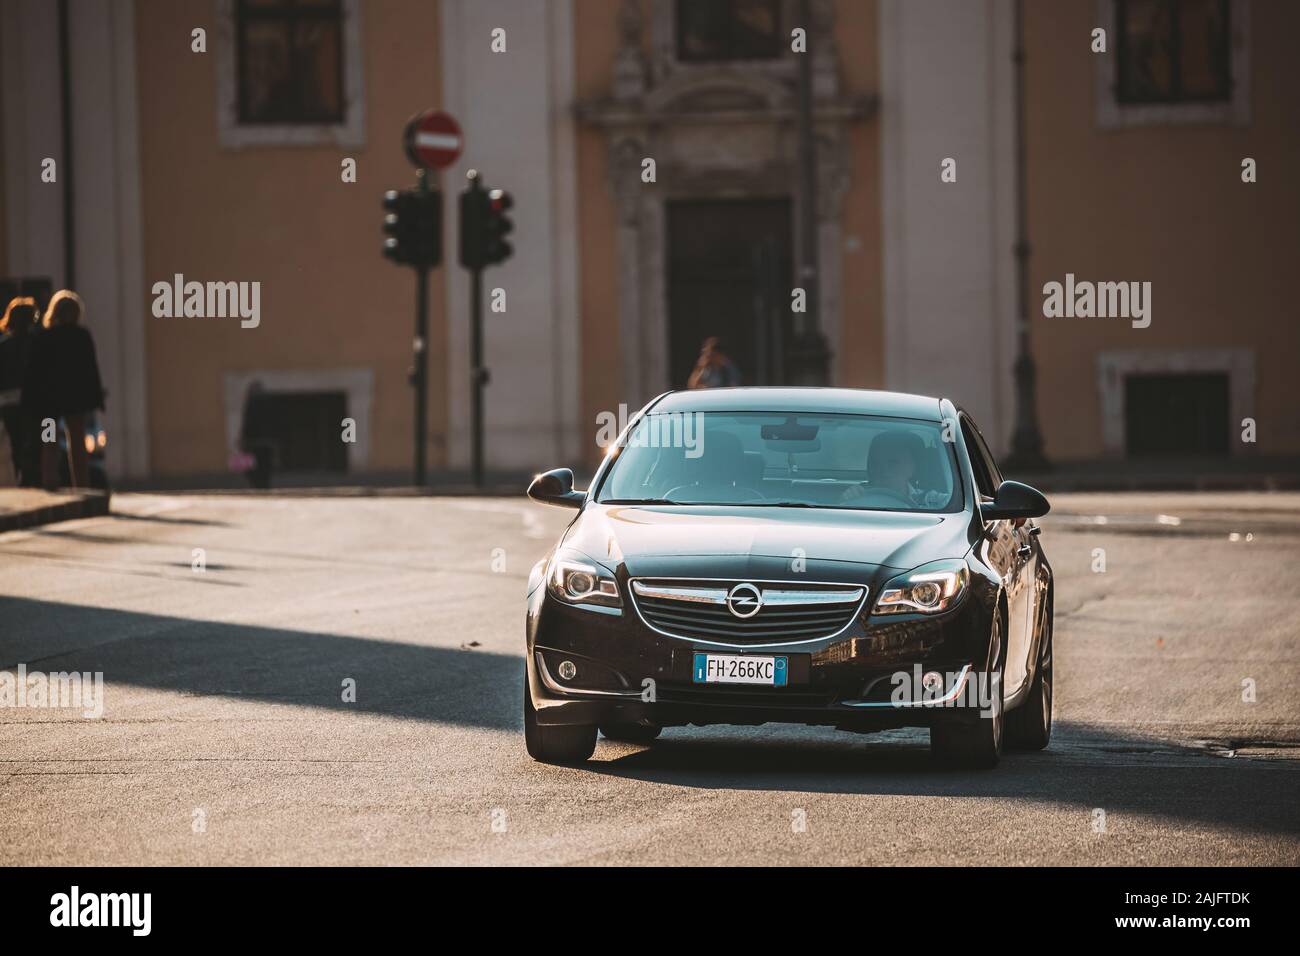 Rom, Italien, 19. Oktober 2018: Schwarz Opel Insignia mit Face-lift In der ersten Generation in Bewegung in der Straße. Insignia ist ein Familie Auto konzipiert und entwickelt. Stockfoto